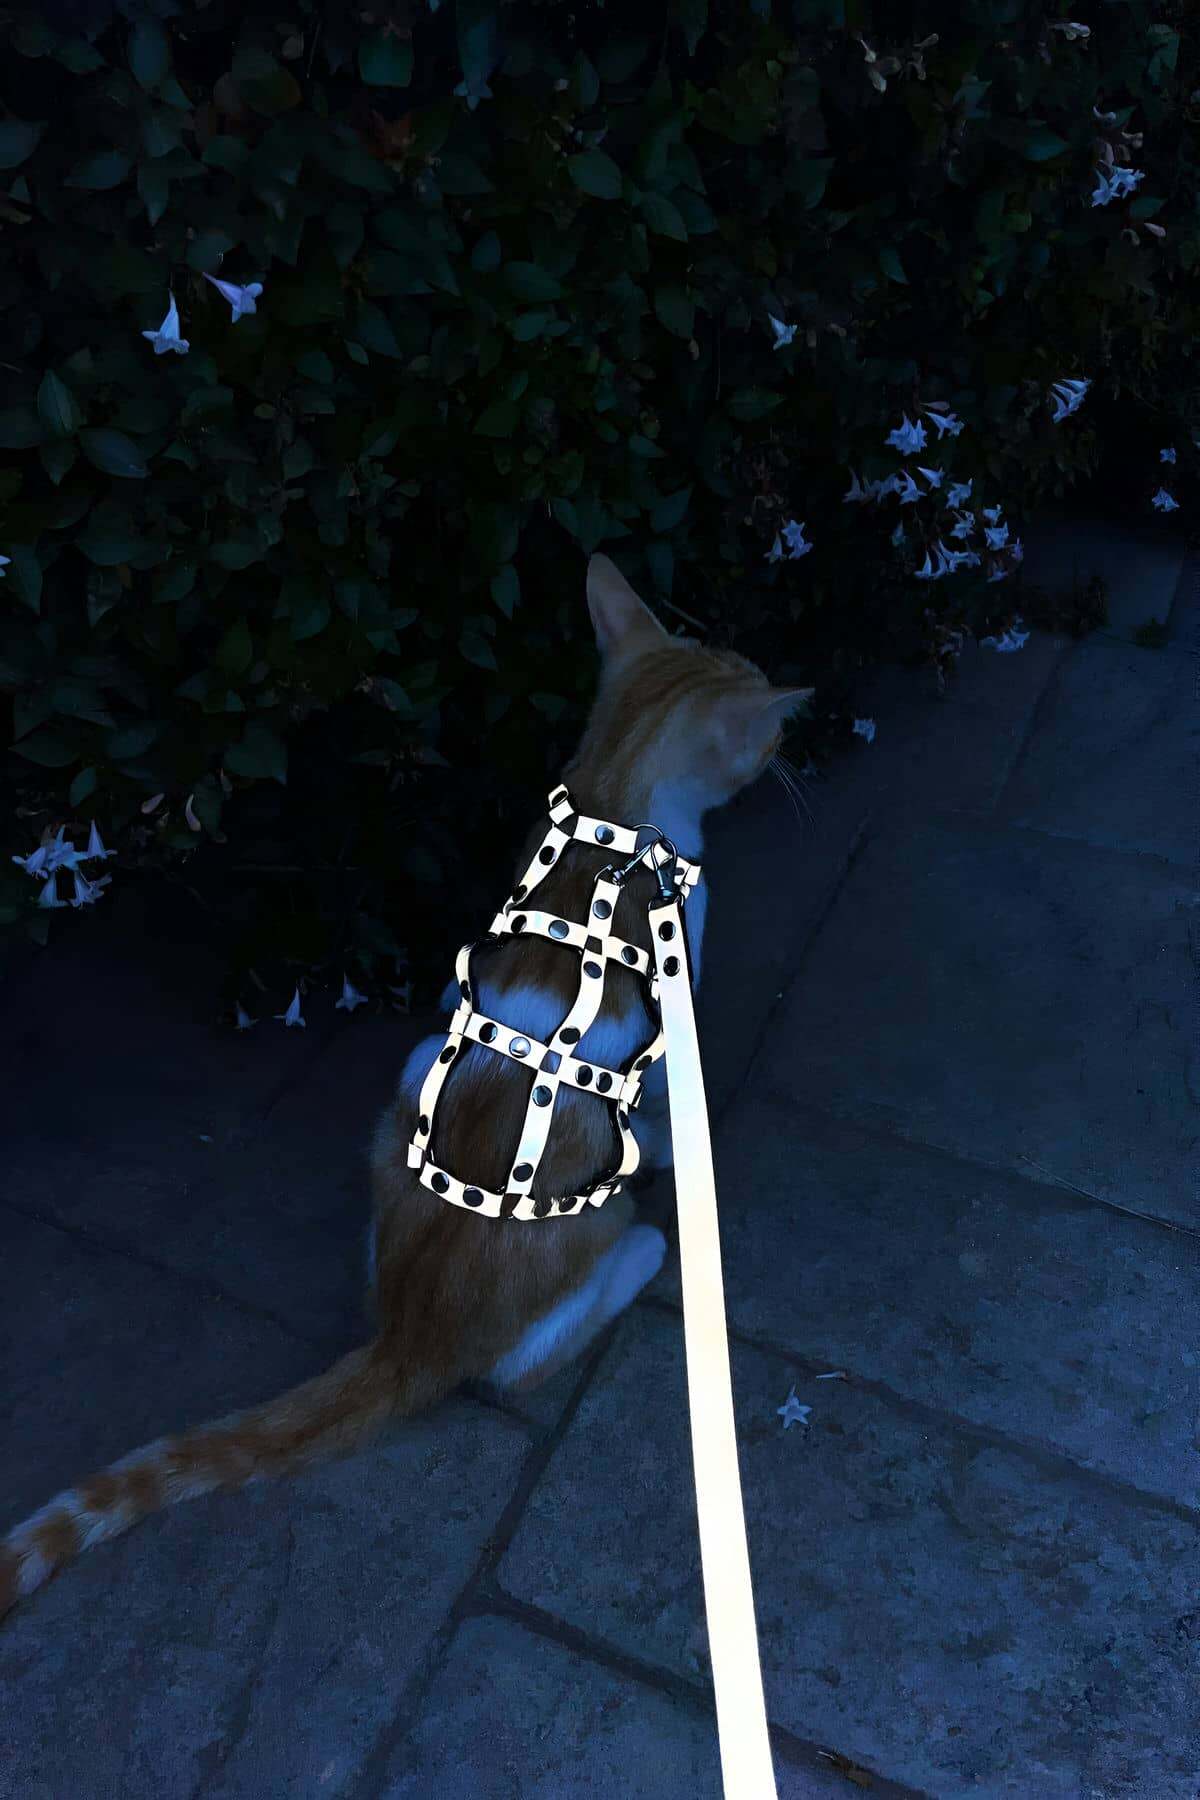 CLZ41 Renkli Reflektör Karanlıkta Parlayan Şık Kedi Harness, Kedi Yürüme Tasması, Kedi Güvenlik Tasması - Ürün Rengi:Beyaz